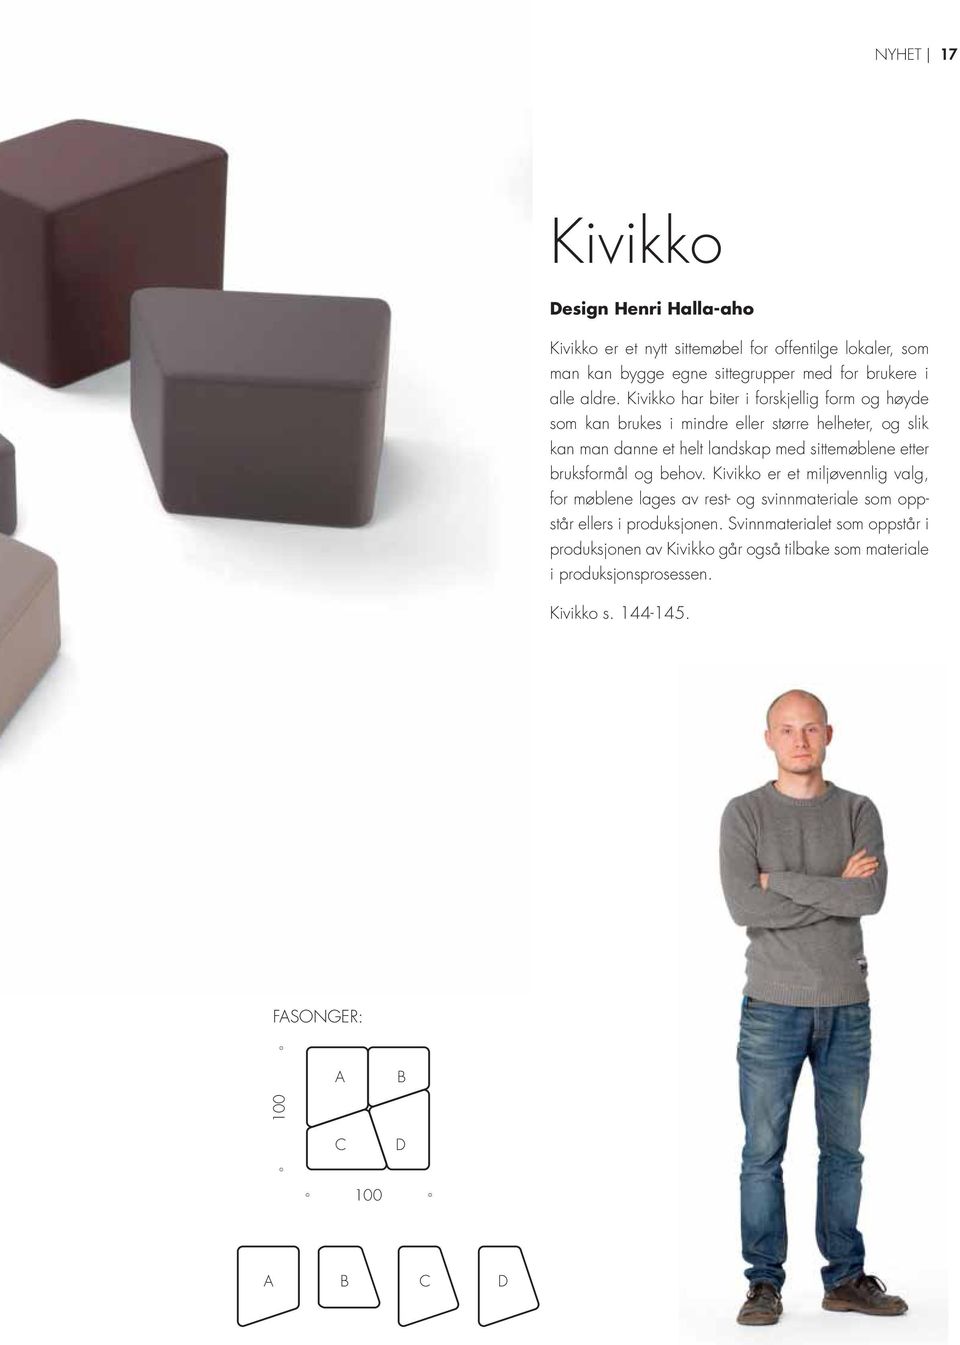 Kivikko har biter i forskjellig form og høyde som kan brukes i mindre eller større helheter, og slik kan man danne et helt landskap med sittemøblene